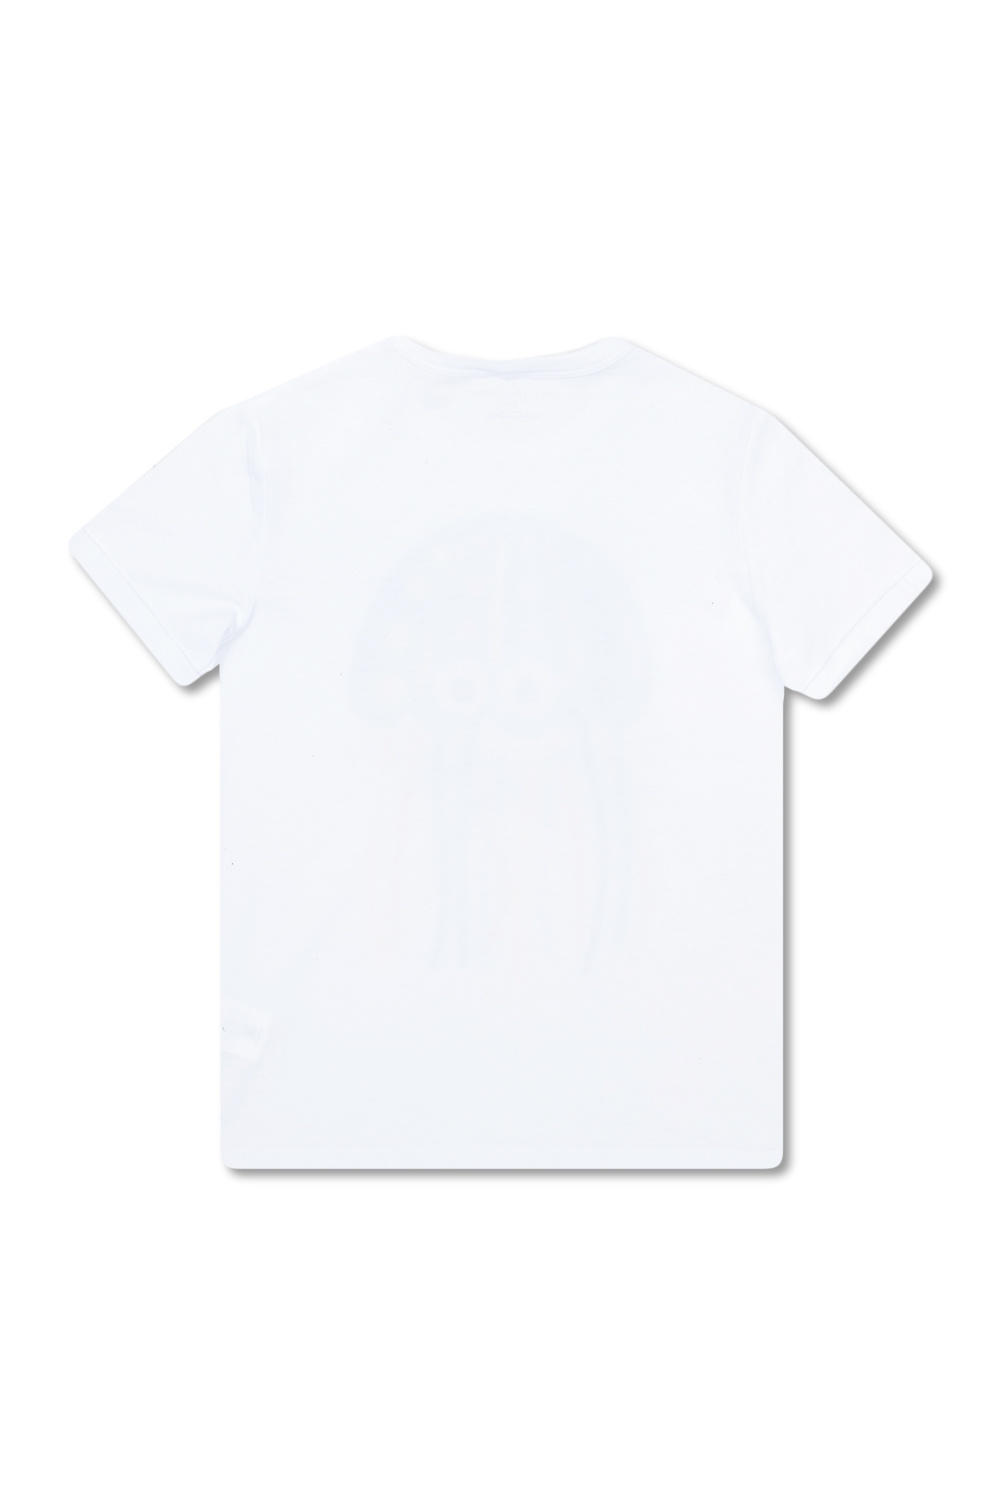 stella turchese McCartney Kids Printed T-shirt